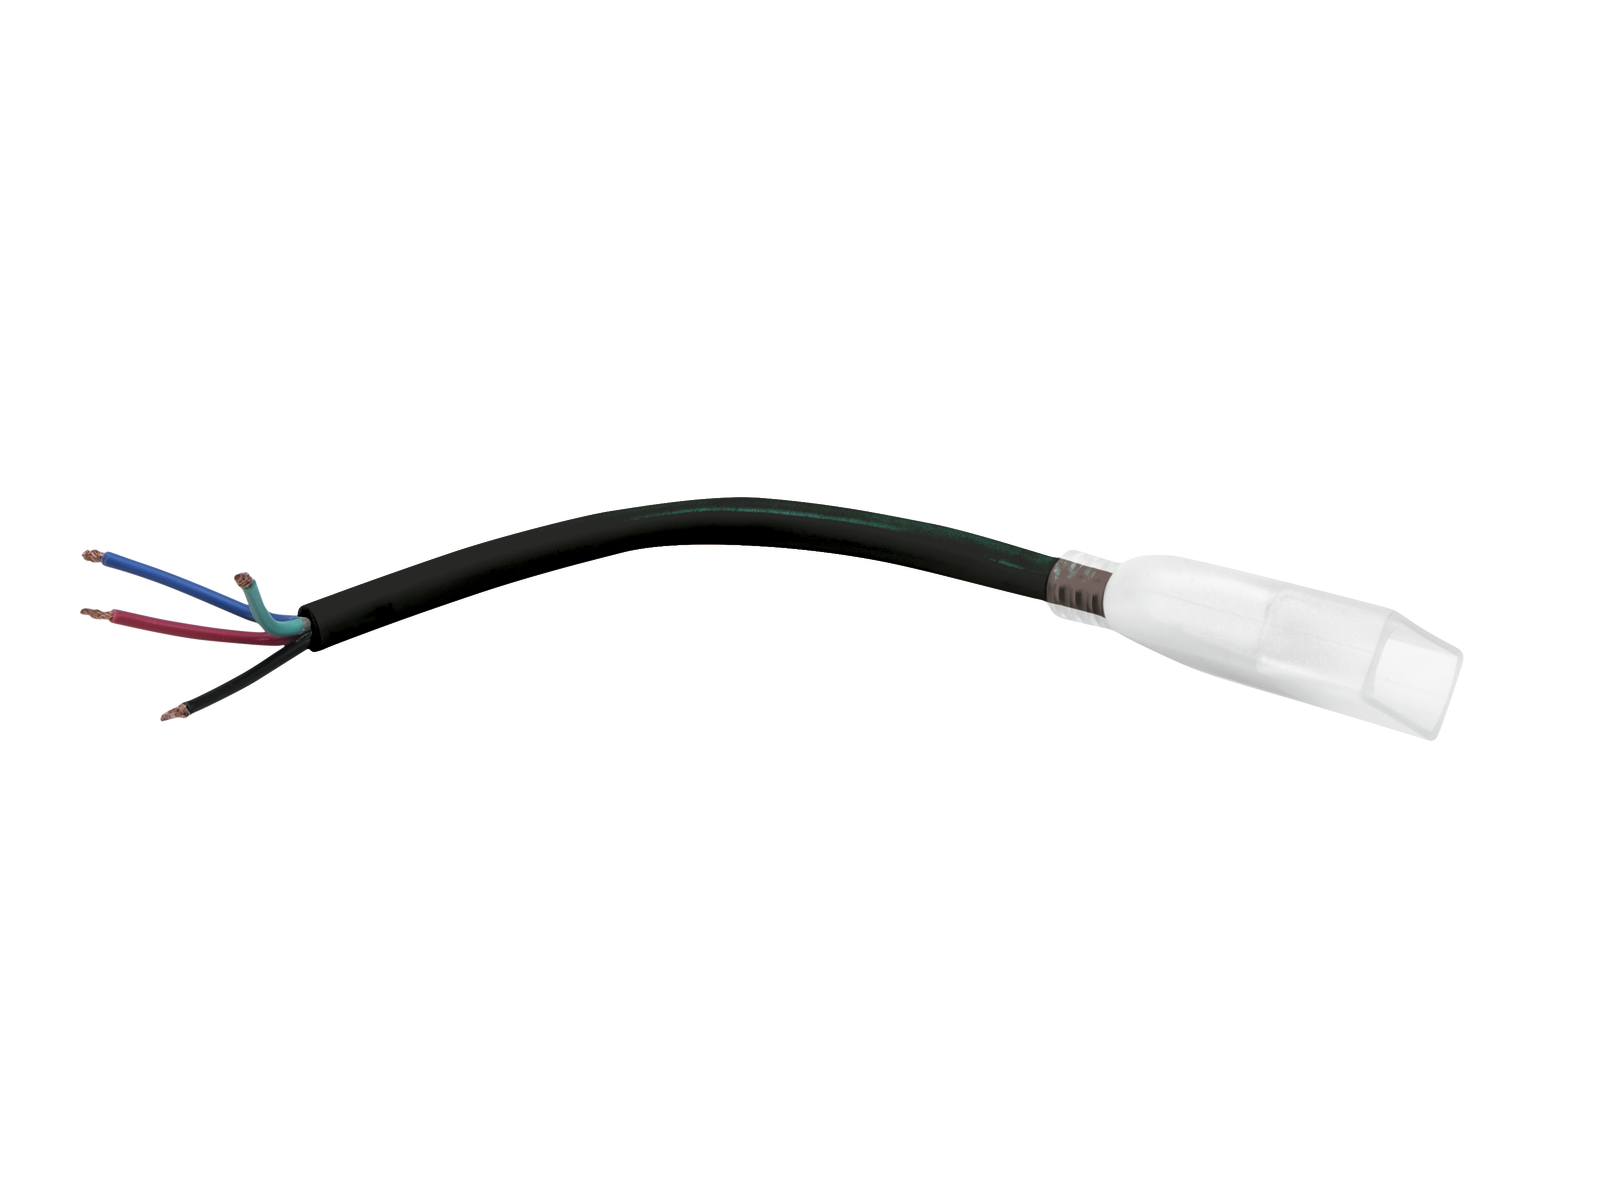 Anschlusskabel - LED NEON FLEX 230V Slim RGB - Anschlusskabel mit offenen Enden - Anschlusskit